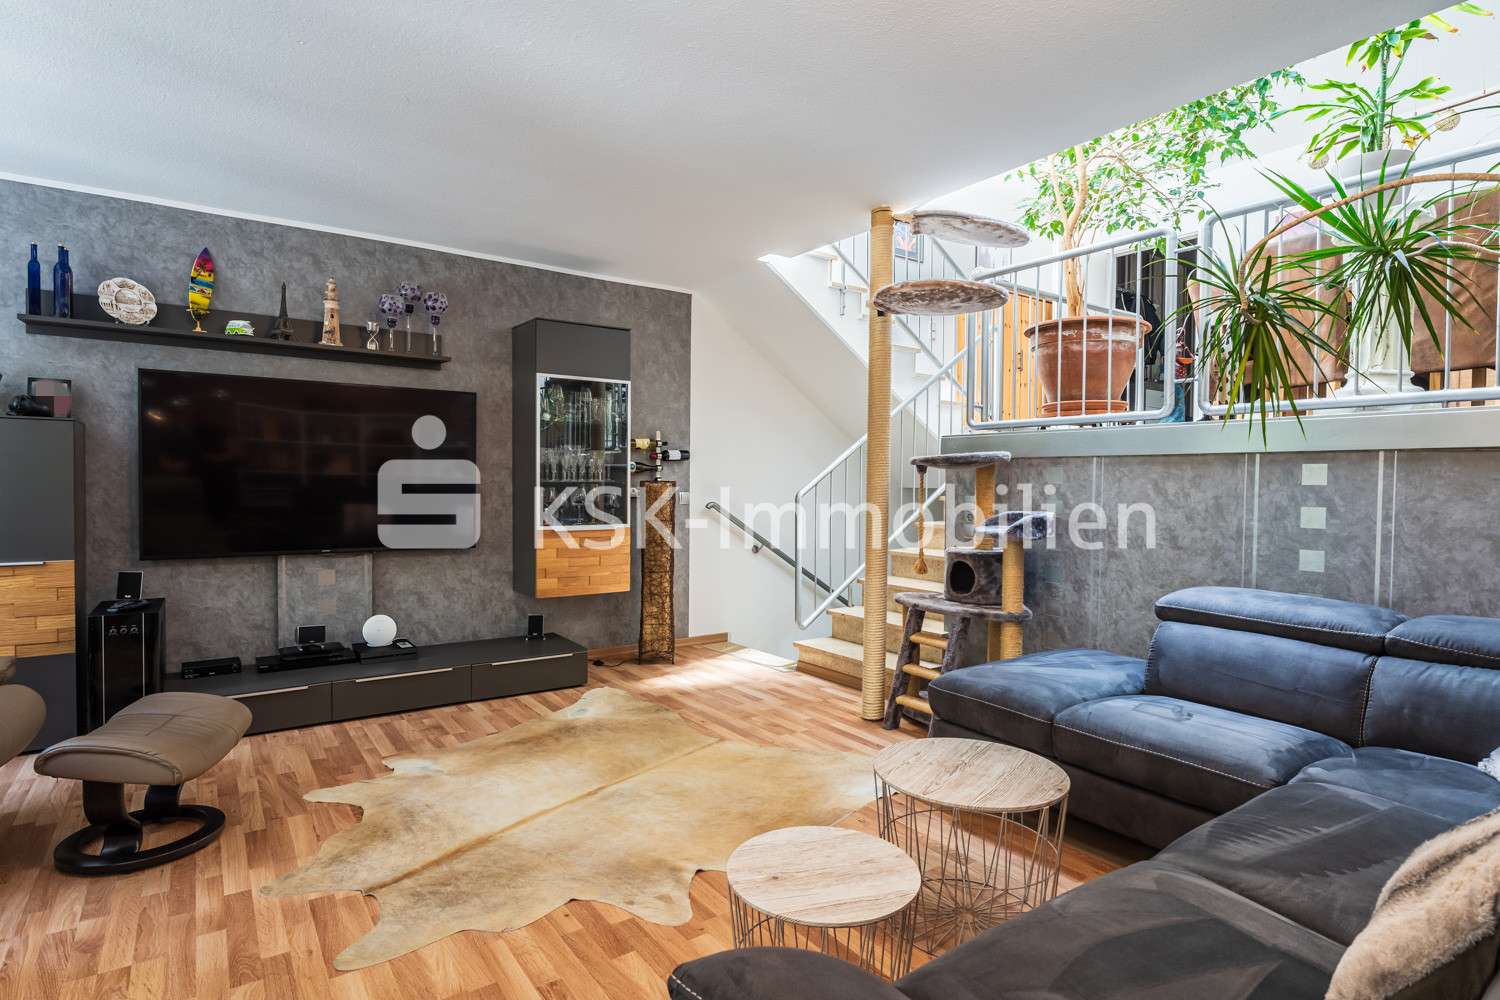 121420 Wohnzimmer Erdgeschoss - Maisonette-Wohnung in 53125 Bonn / Brüser Berg mit 132m² kaufen